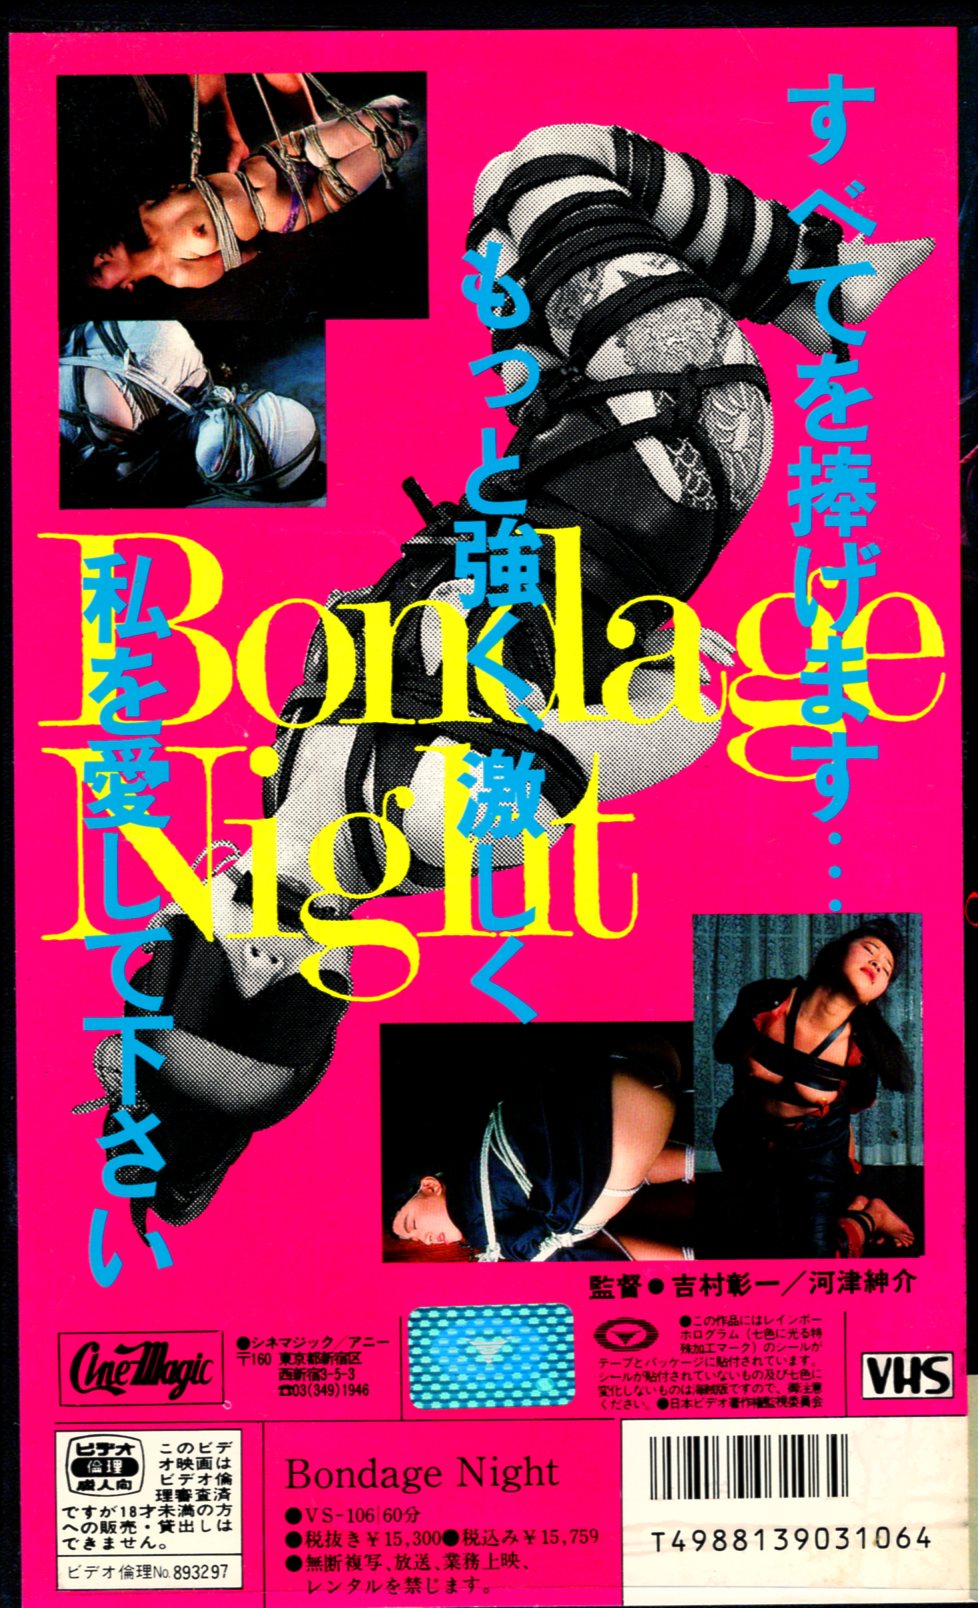 Bondage Night アダルトVHS 柴田かおり 藤ひとみ 田中あかり S&Mビデオ 